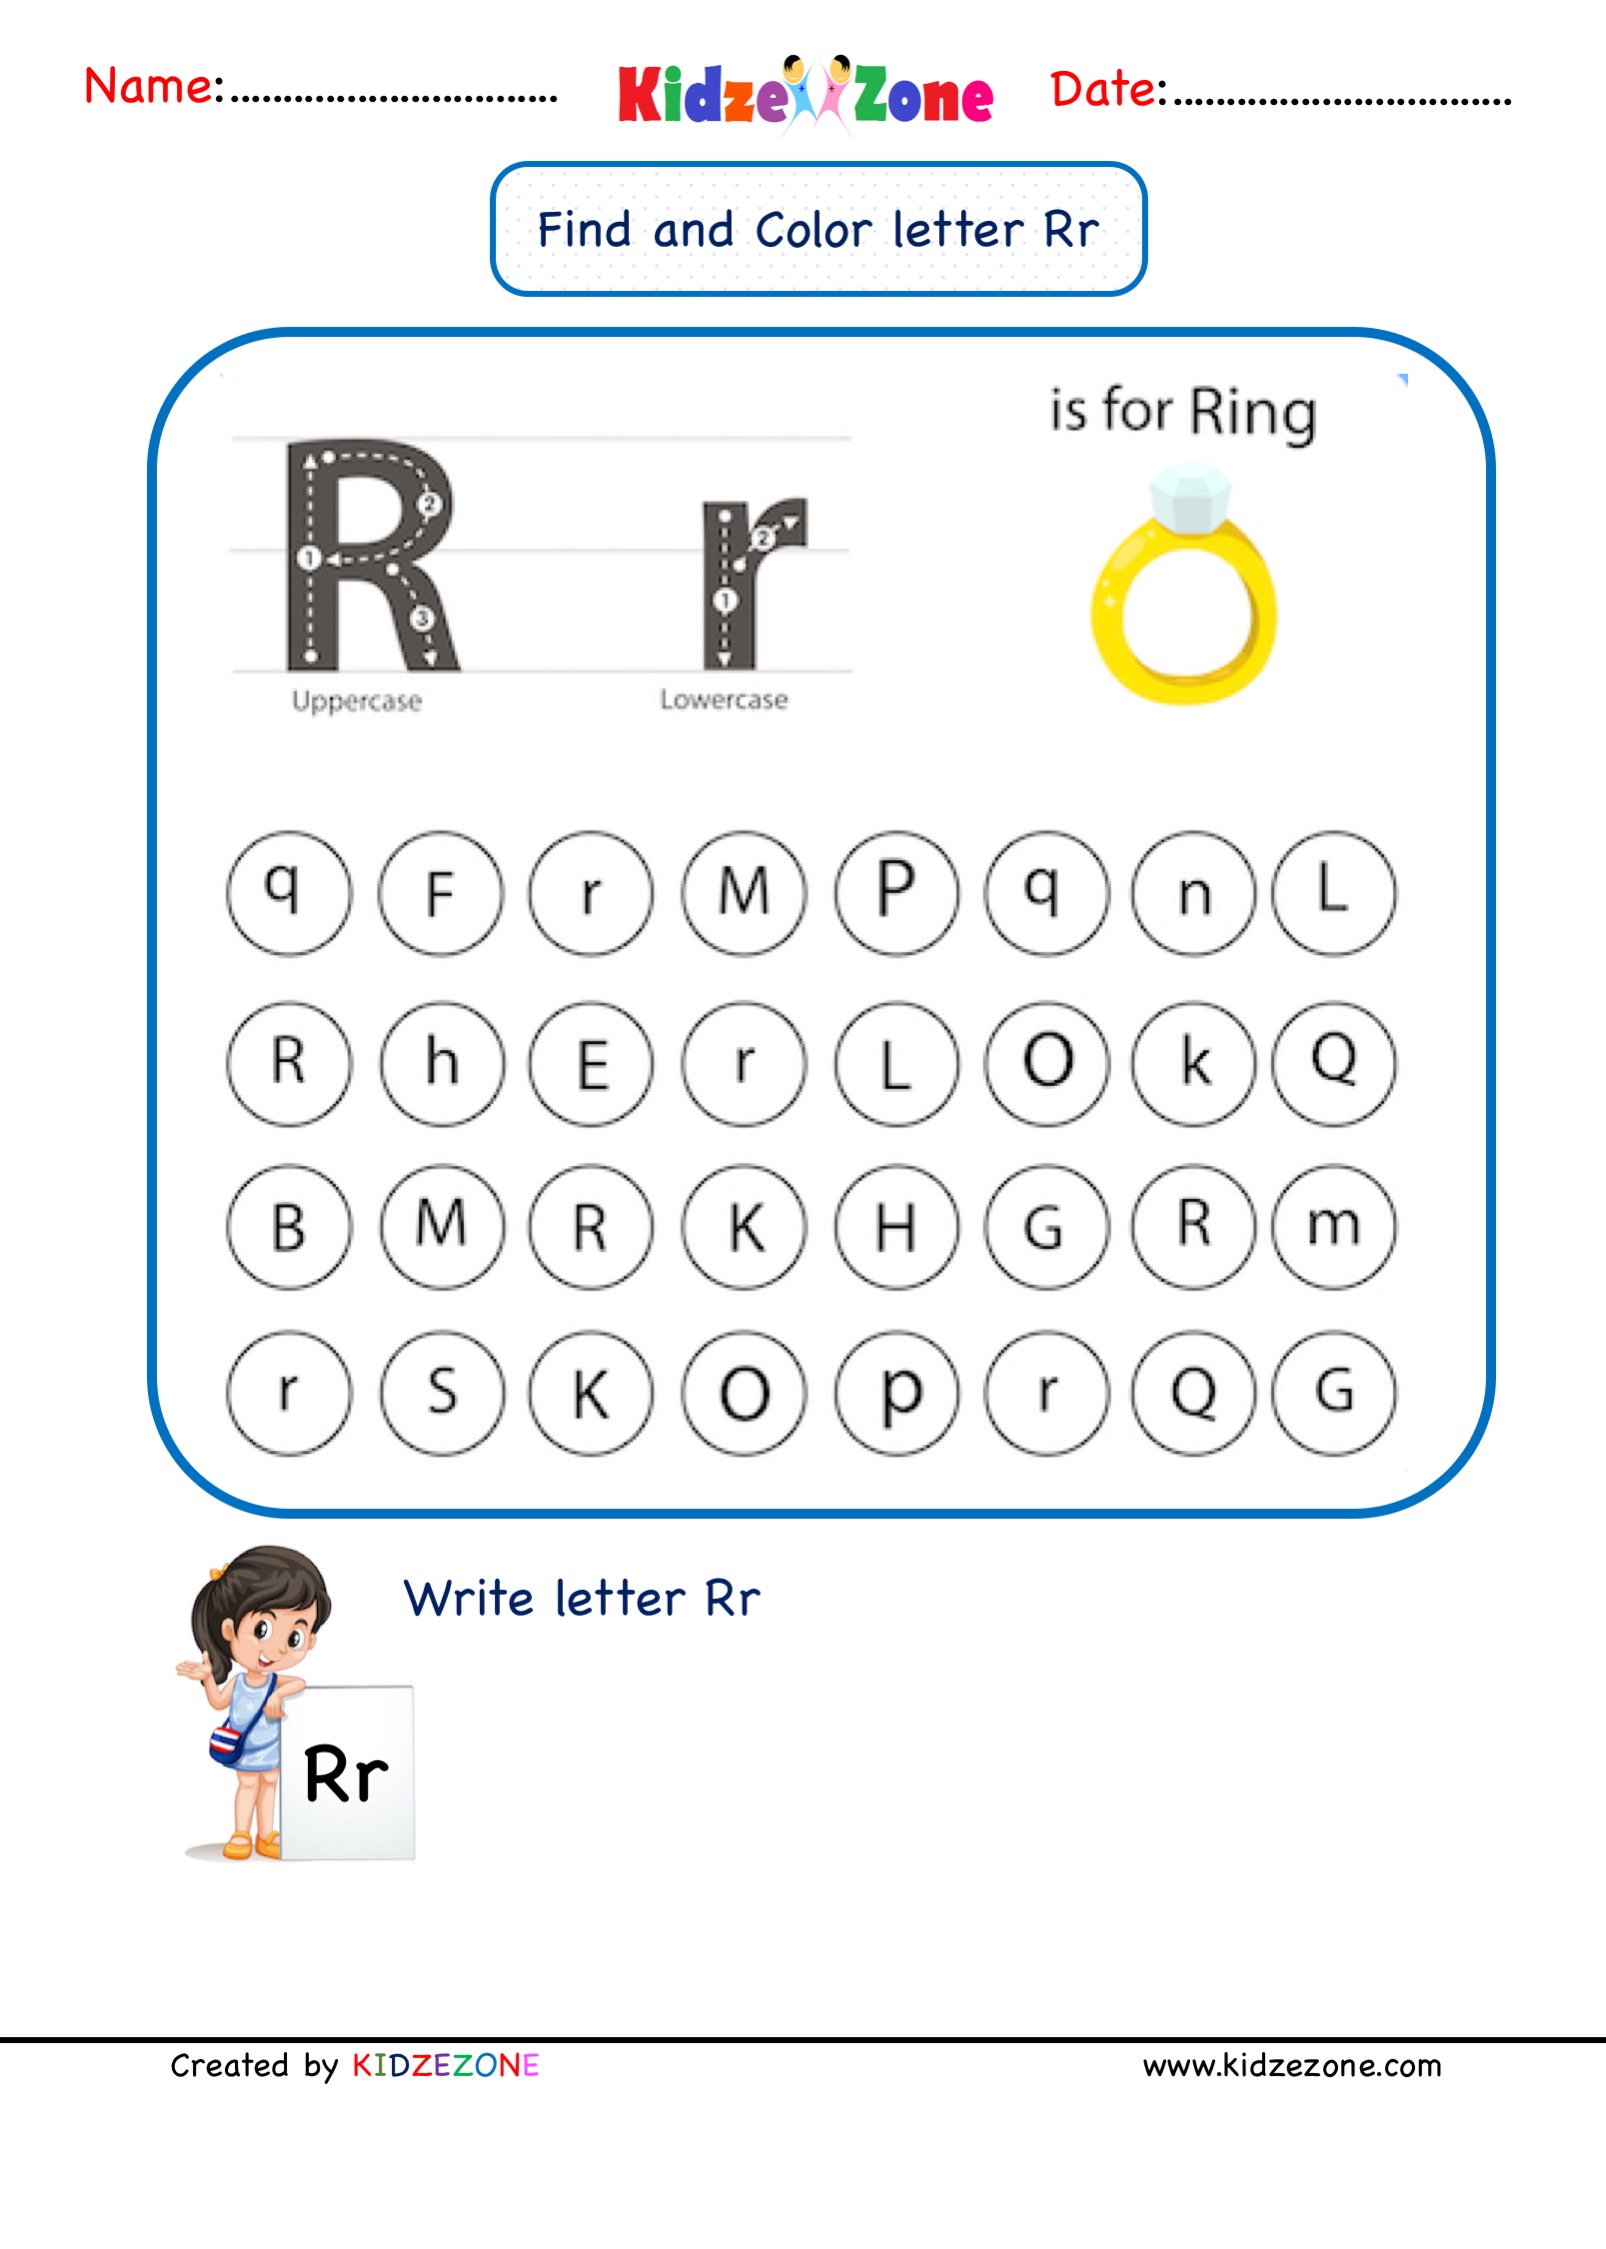 kindergarten-letter-r-find-and-color-worksheet-kidzezone